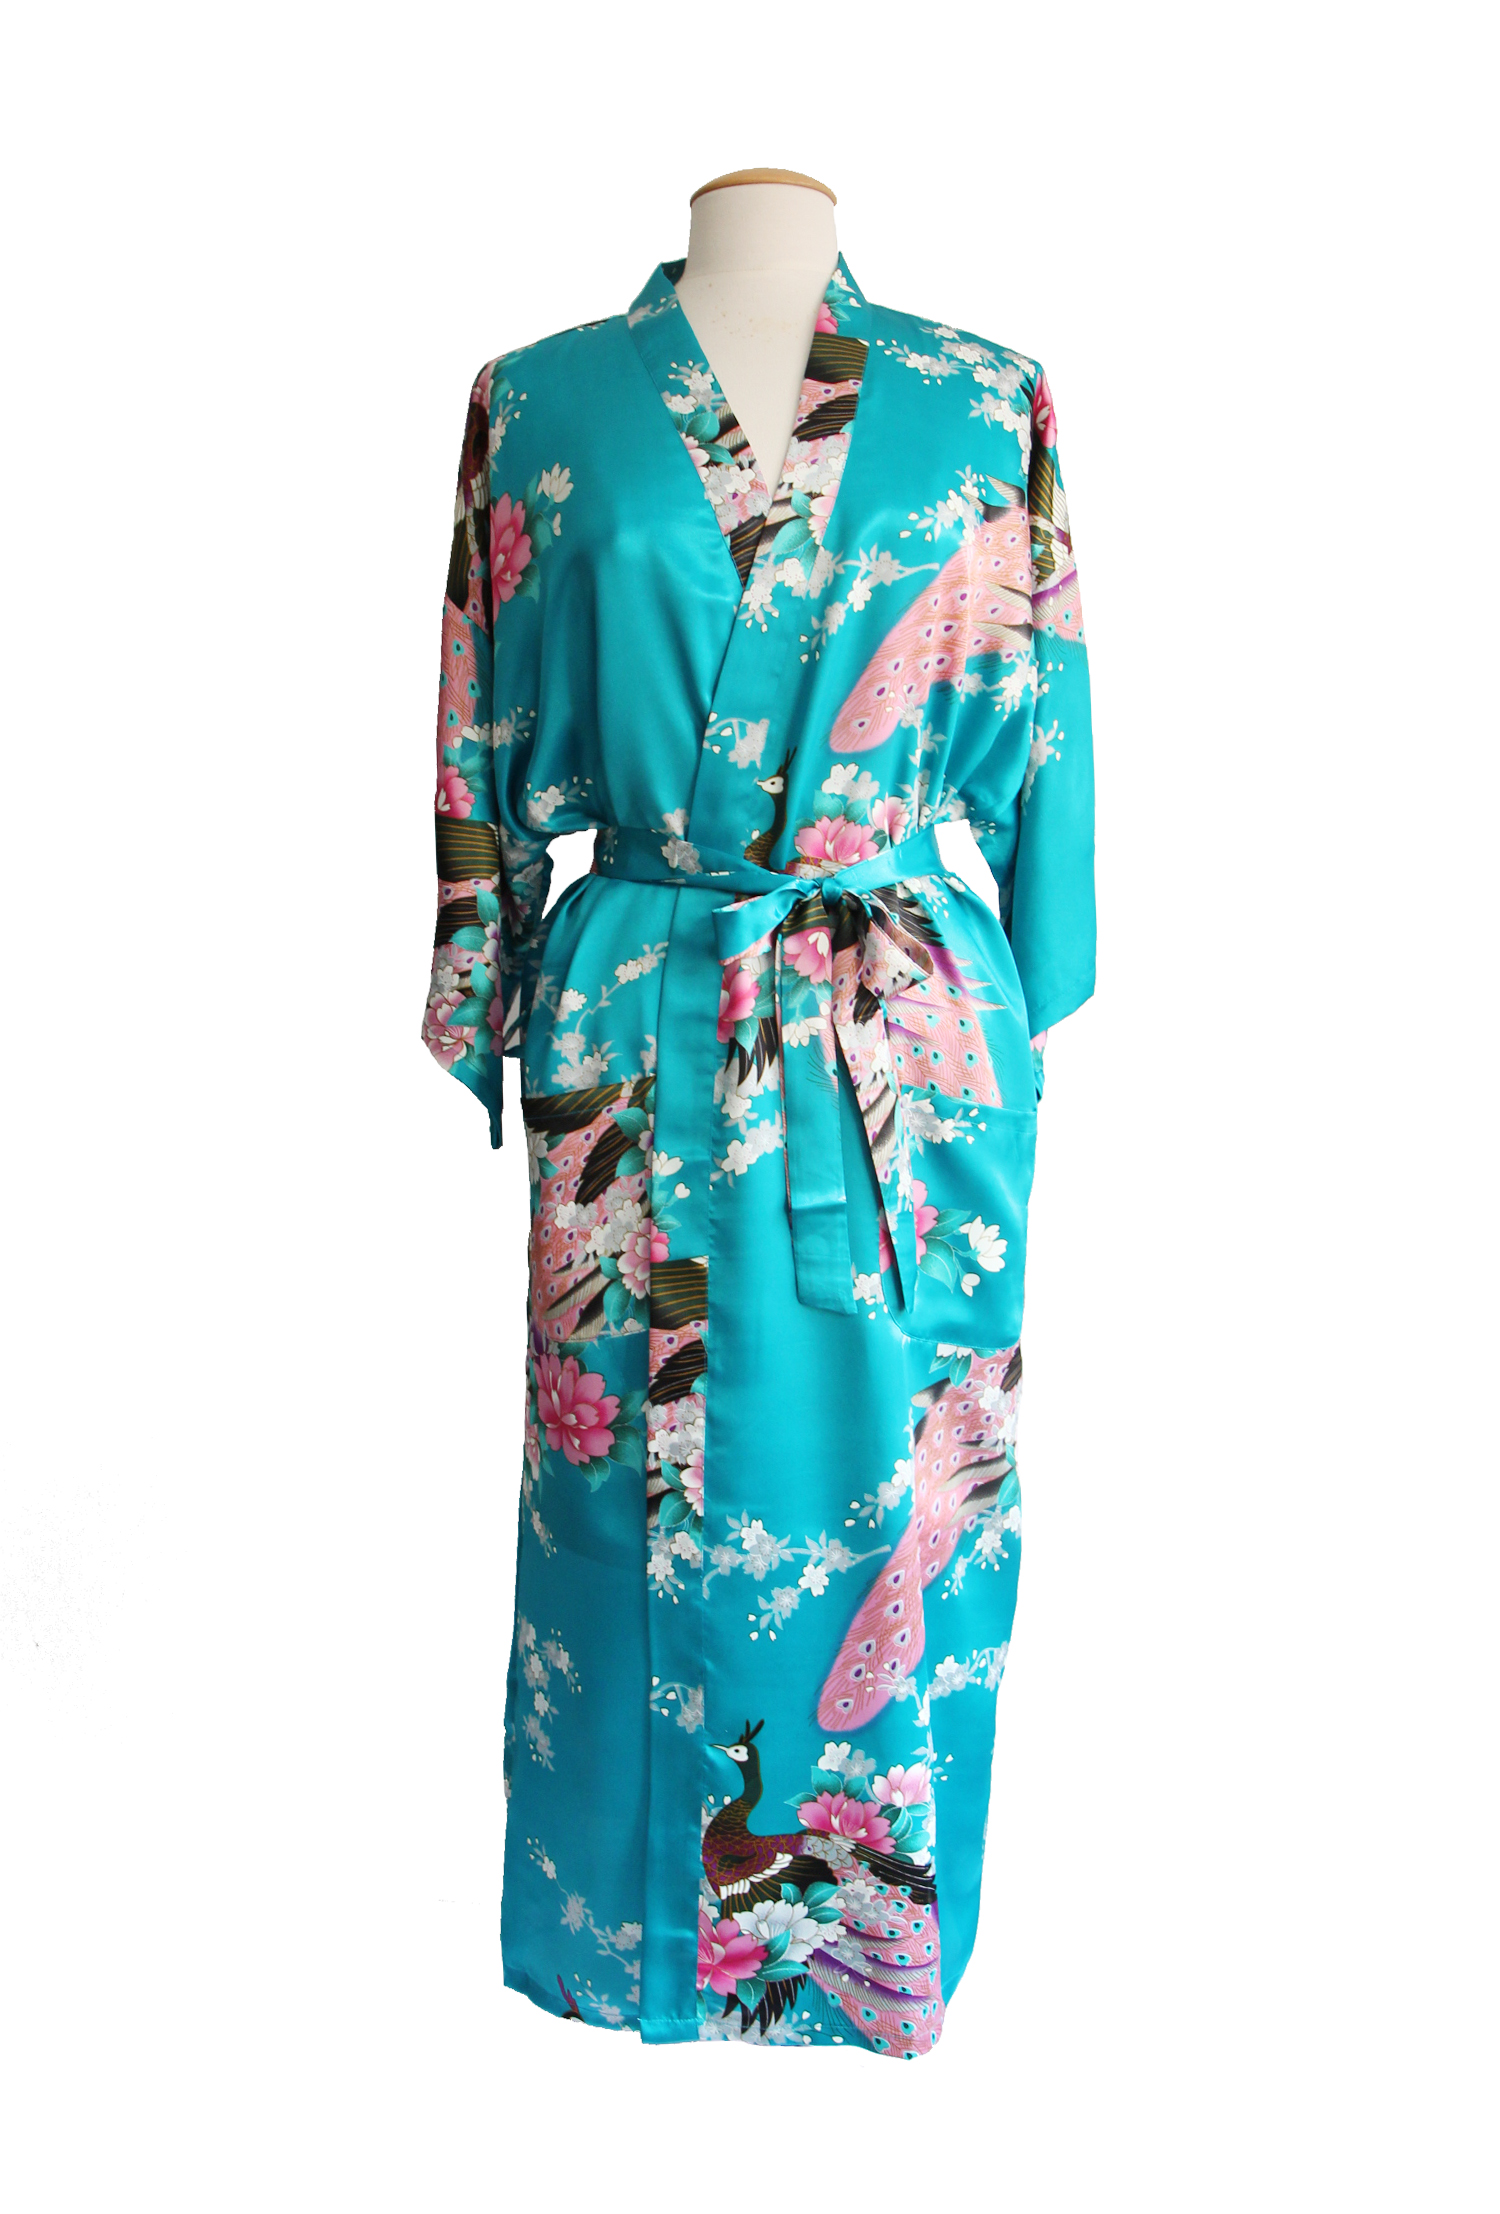 contrast vochtigheid kamp Turquoise kimono satijn Japanse satijnen badjas kamerjas geisha ochtendjas  yukata kopen?